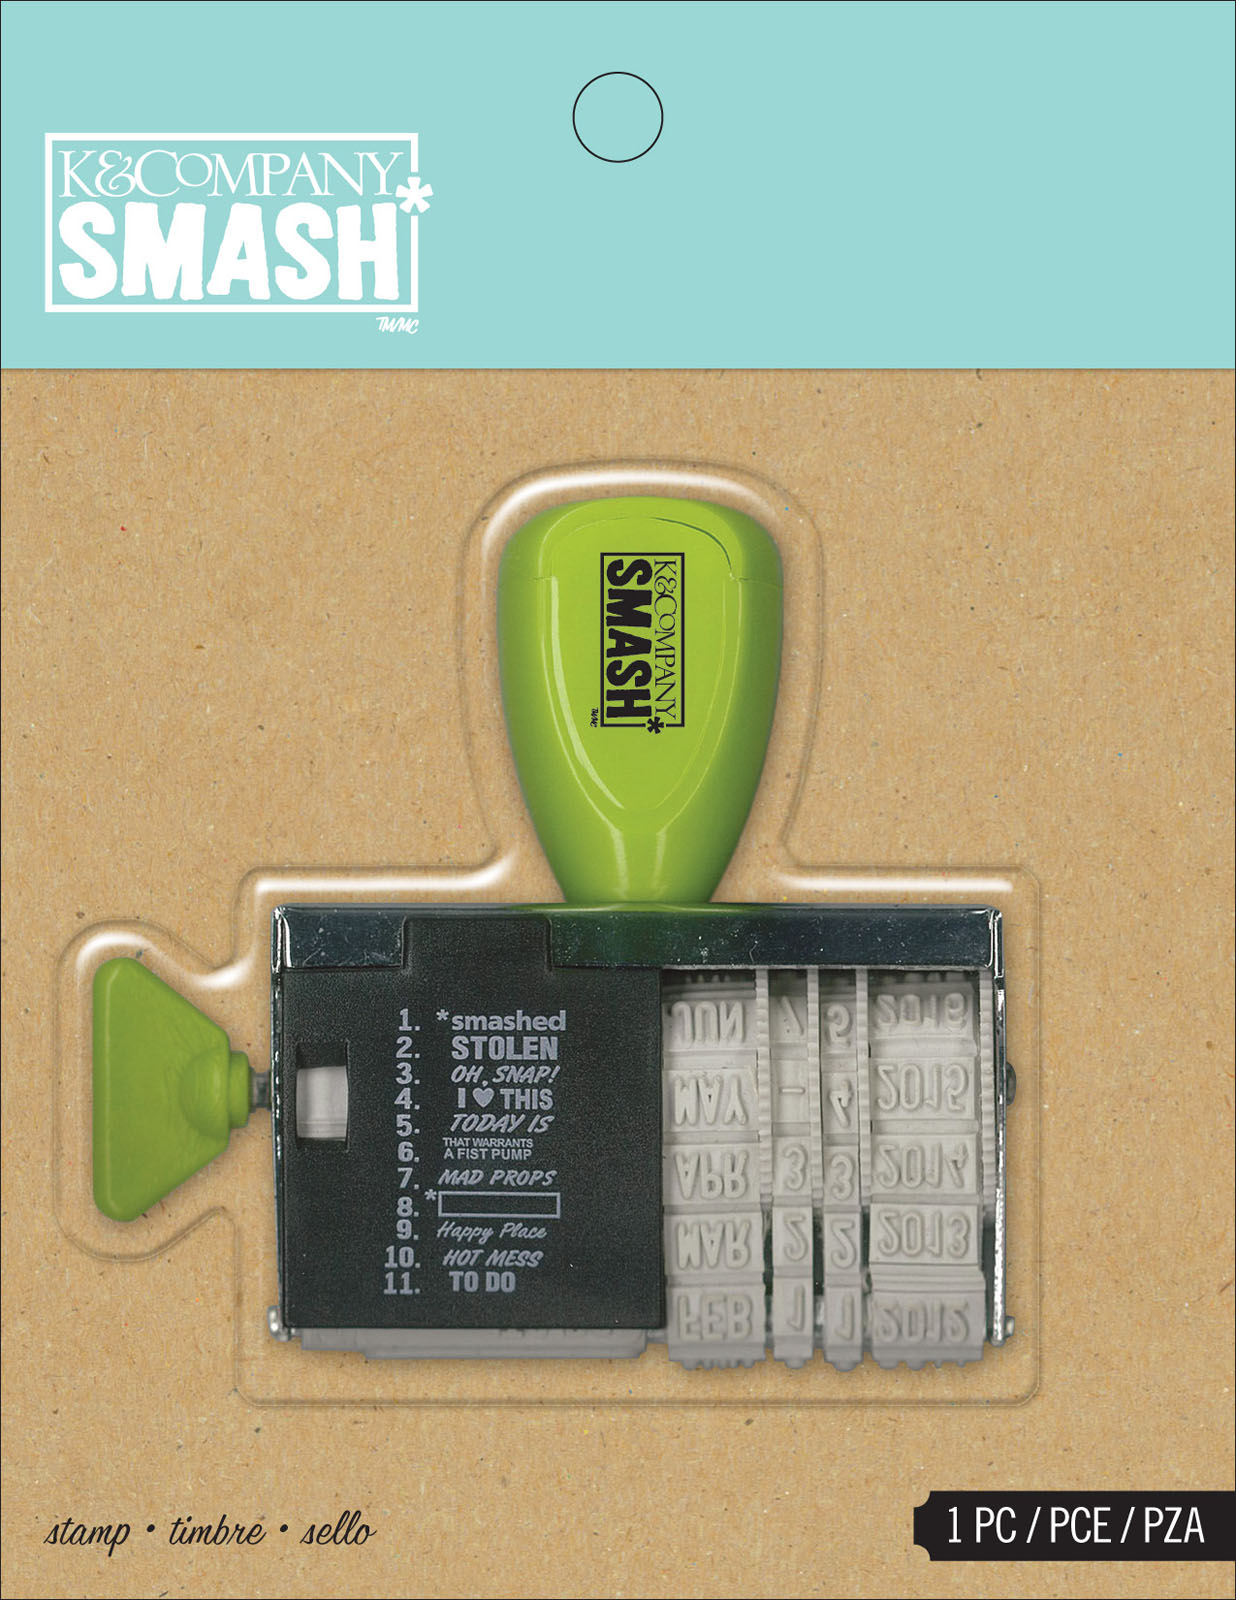 K&Company Smash • Stamp Date